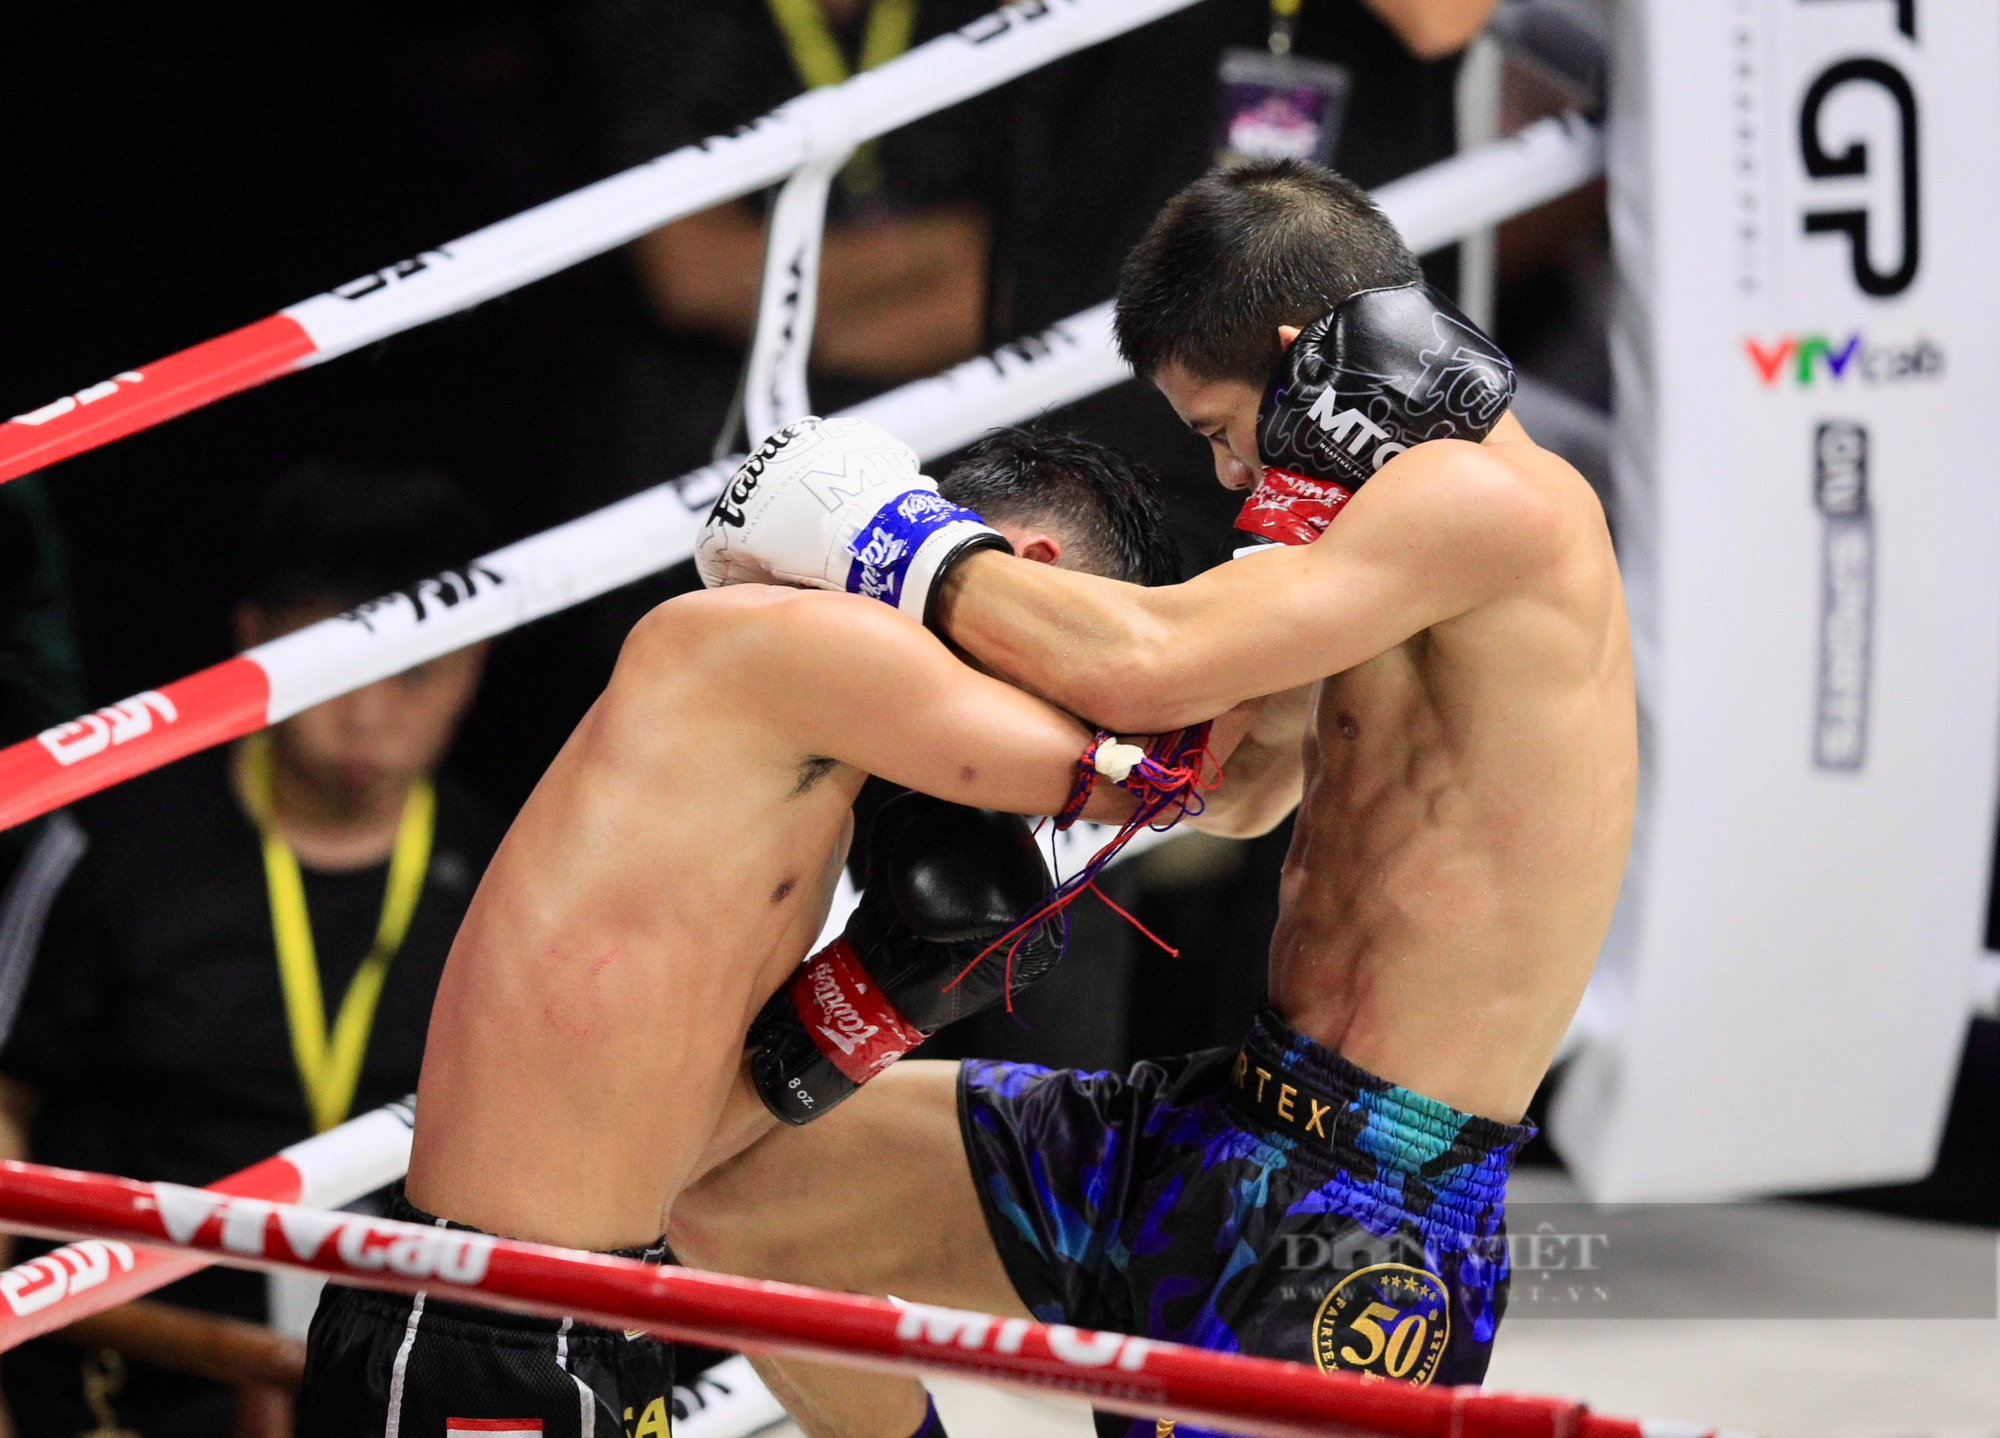 Liên tục cho võ sĩ Thái đo đài, nhà vô địch SEA Games Huỳnh Văn Tuấn khiến khán giả phấn khích - Ảnh 8.